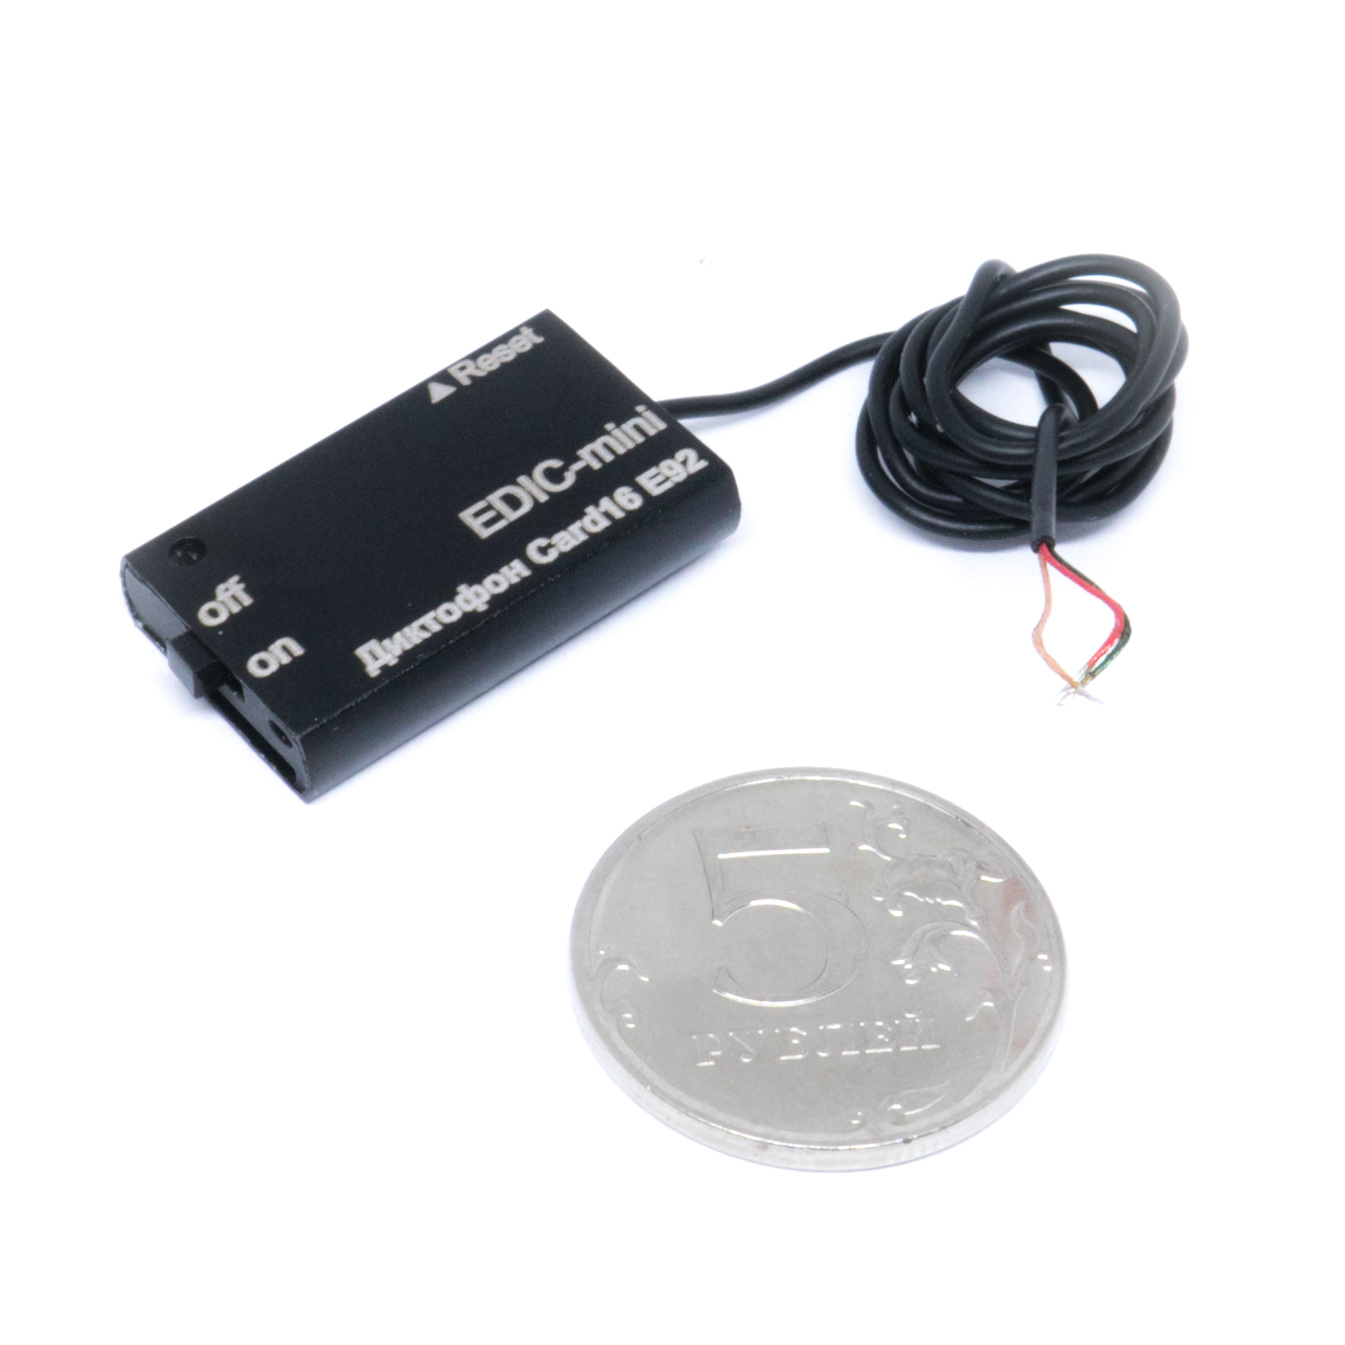 Все Телесистемы EM Card16 E92 (металл, размер 5*17*30мм, вес 5г, внешнее питание 3.6-6в). видеонаблюдения в магазине Vidos Group